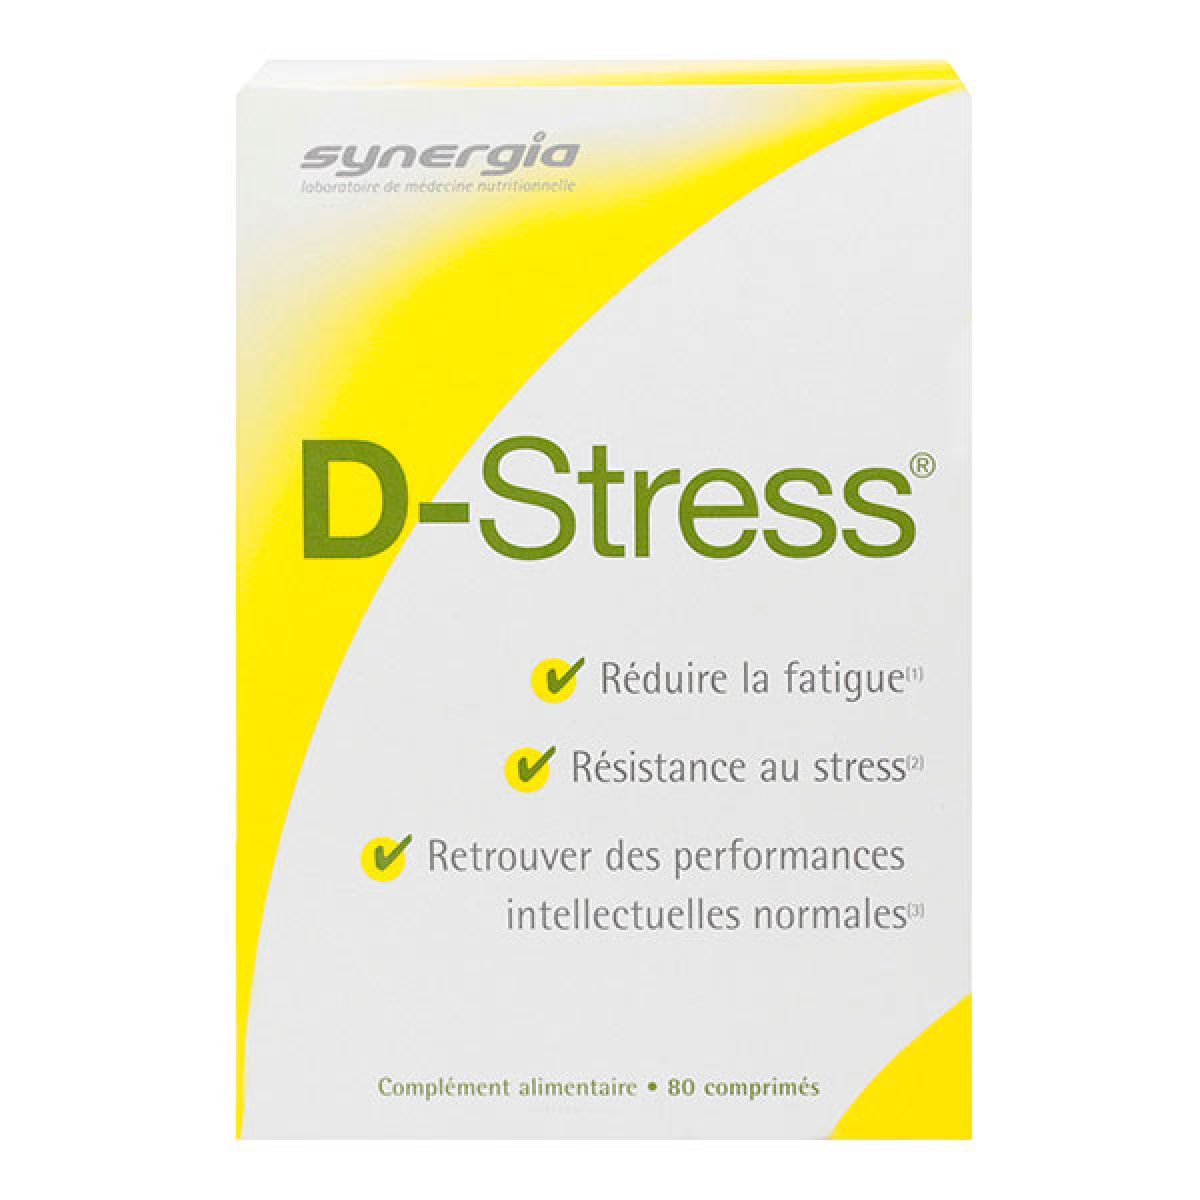 d-stress est indiqué pour lutter contre la fatigue et le stress